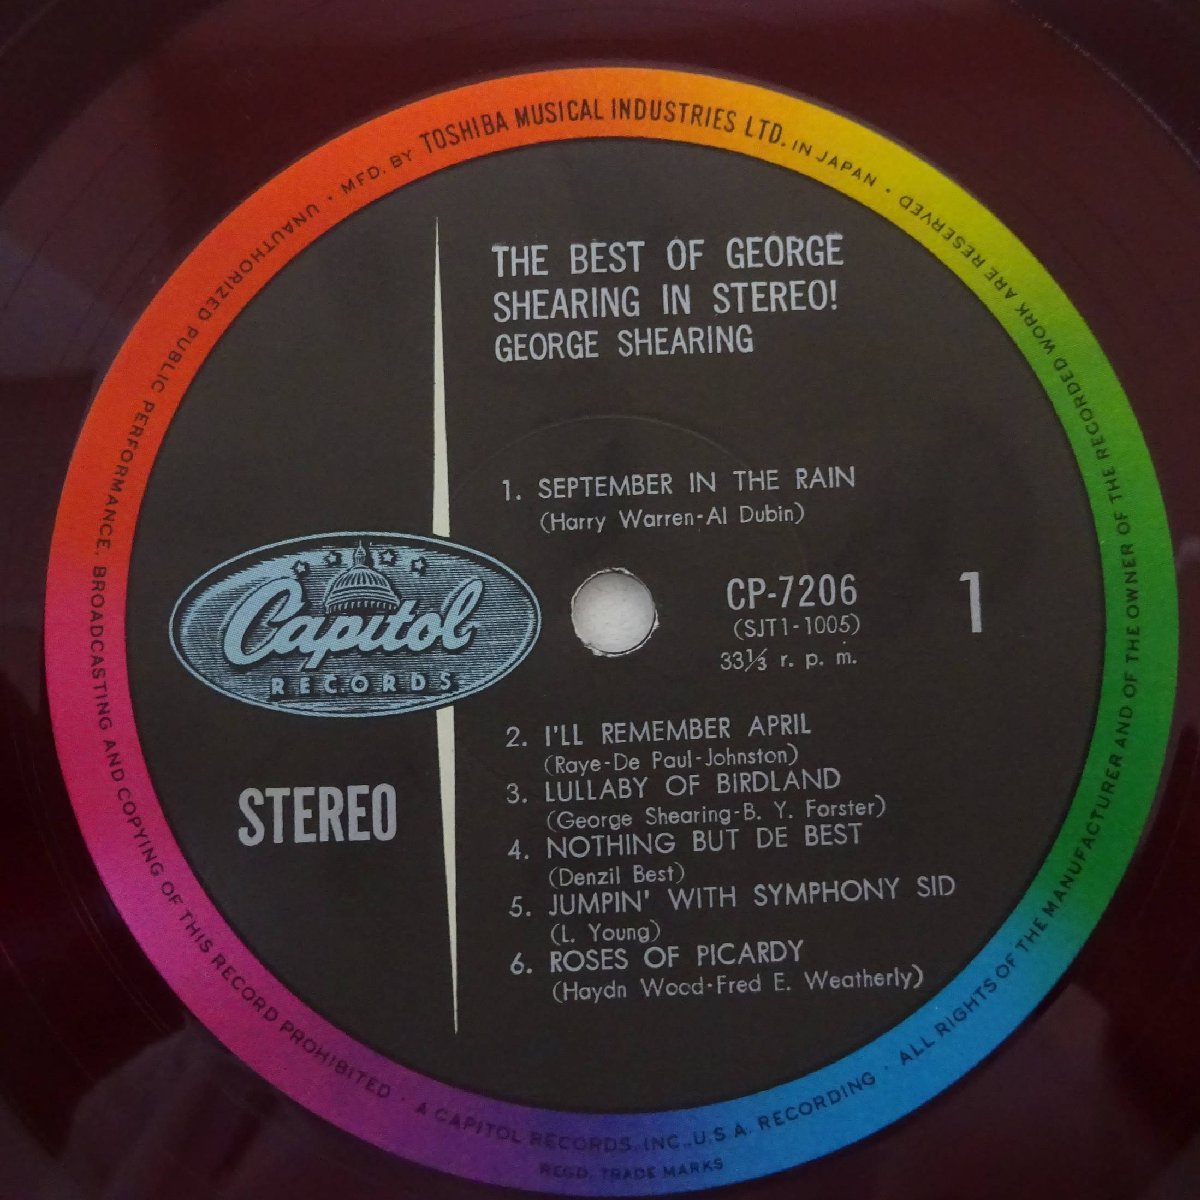 14025550;【帯付/Capitol/ペラジャケ/東芝赤盤】George Shearing / The Best Of George Shearing In Stereo!_画像3